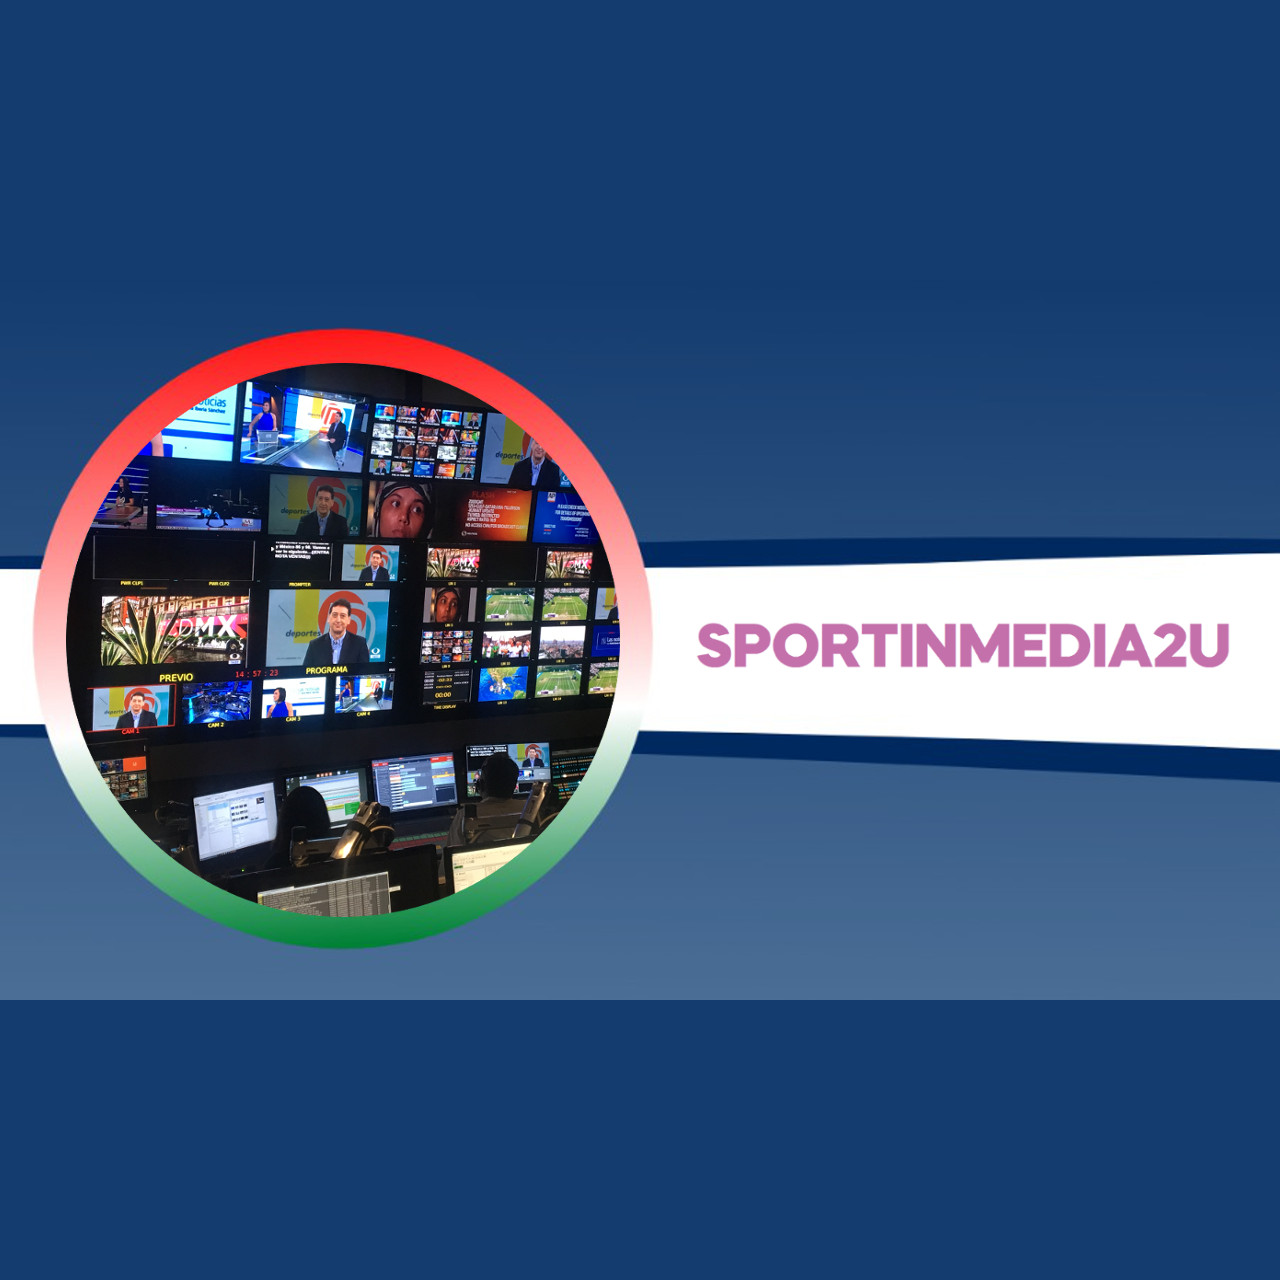 Sportinmedia2u – 5a Puntata con Popi Bonnici: Regista di eventi sportivi per Mediaset e Lega Serie A